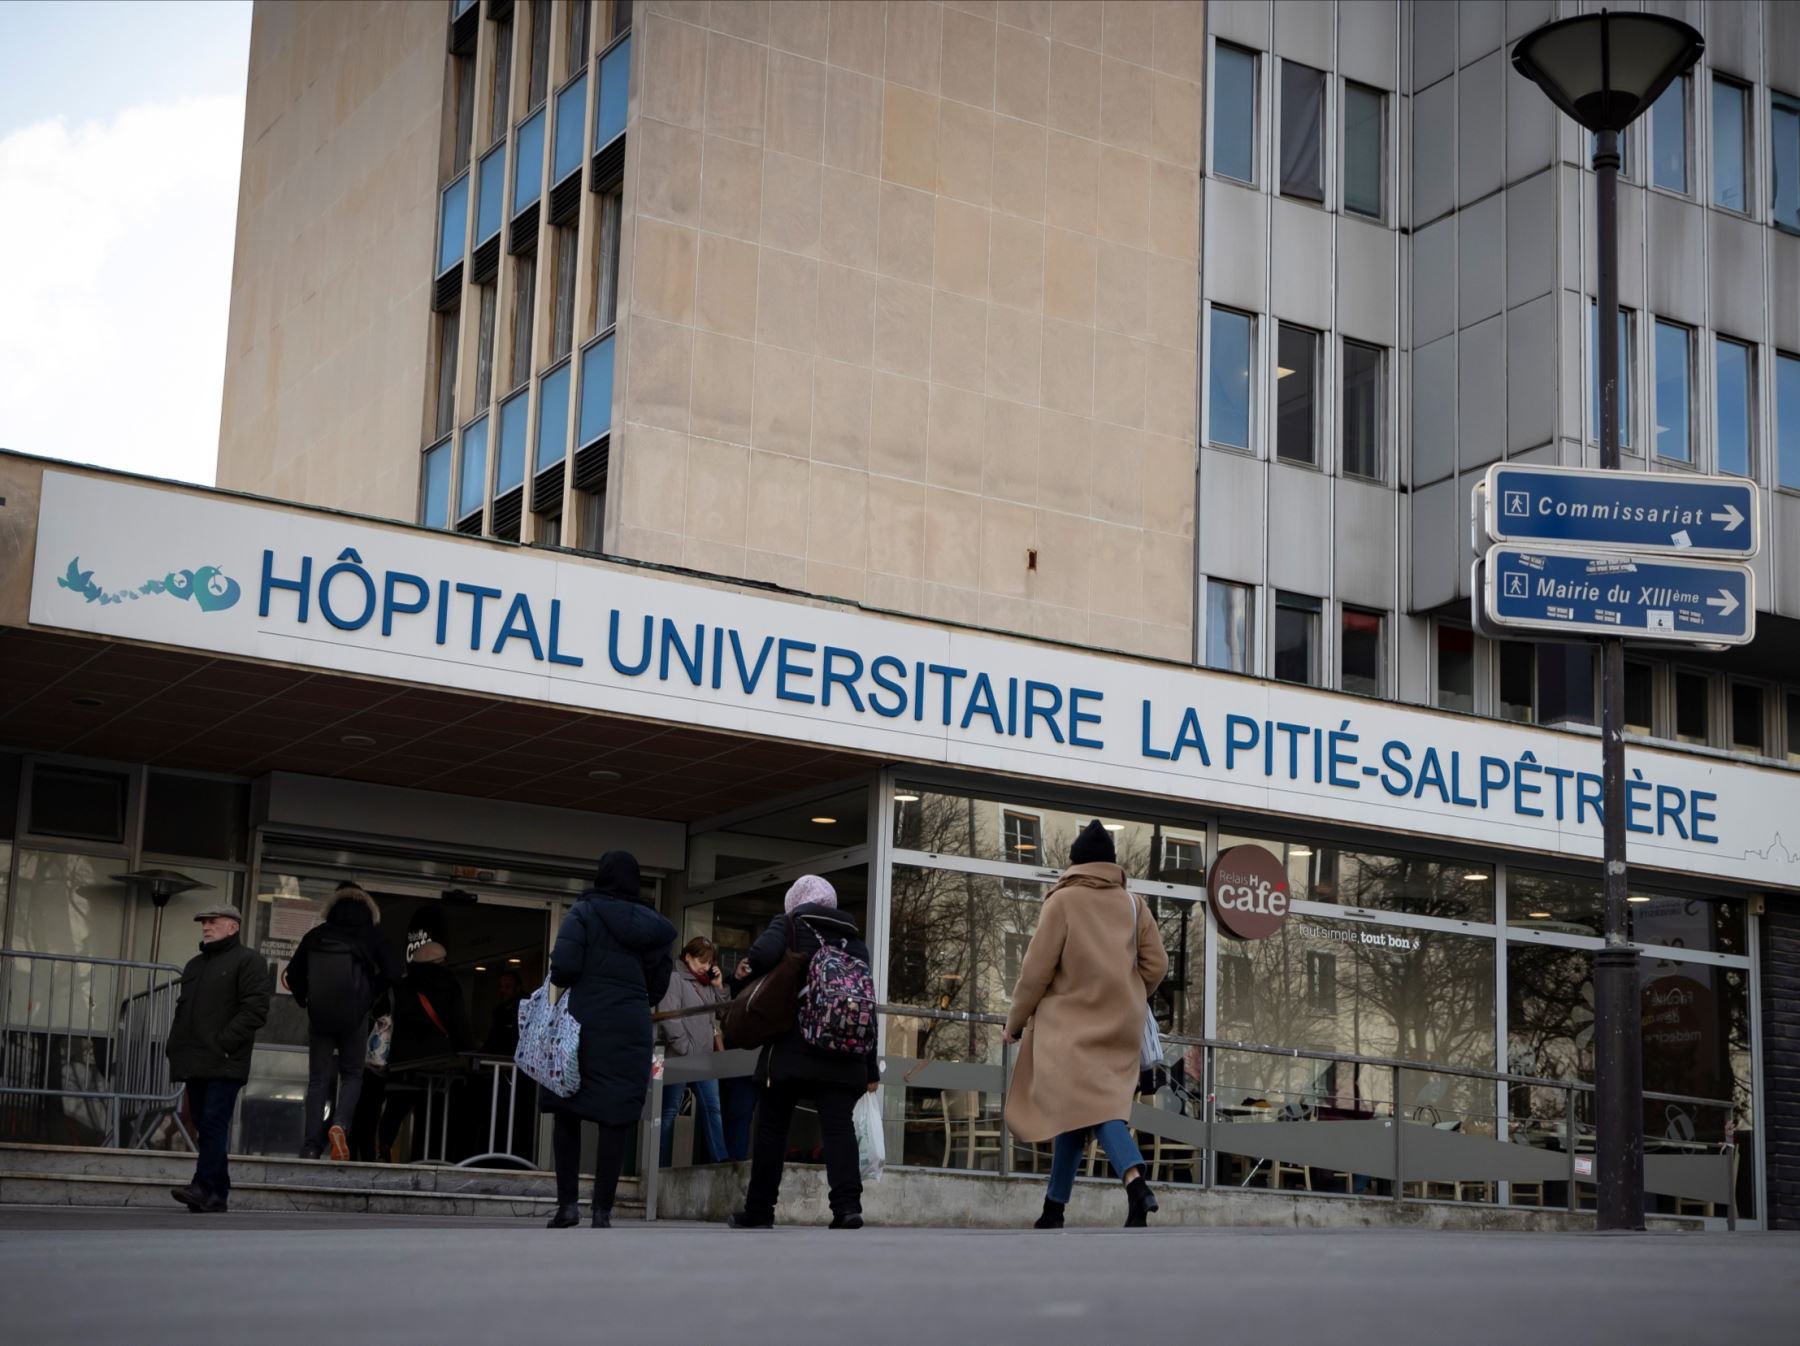 París entrará este lunes en alerta máxima por la expansión del coronavirus, tras haber rebasado todos los límites impuestos por el Gobierno y presentar una degradación notable de la situación sanitaria, informaron a EFE fuentes del Gobierno. Foto: EFE